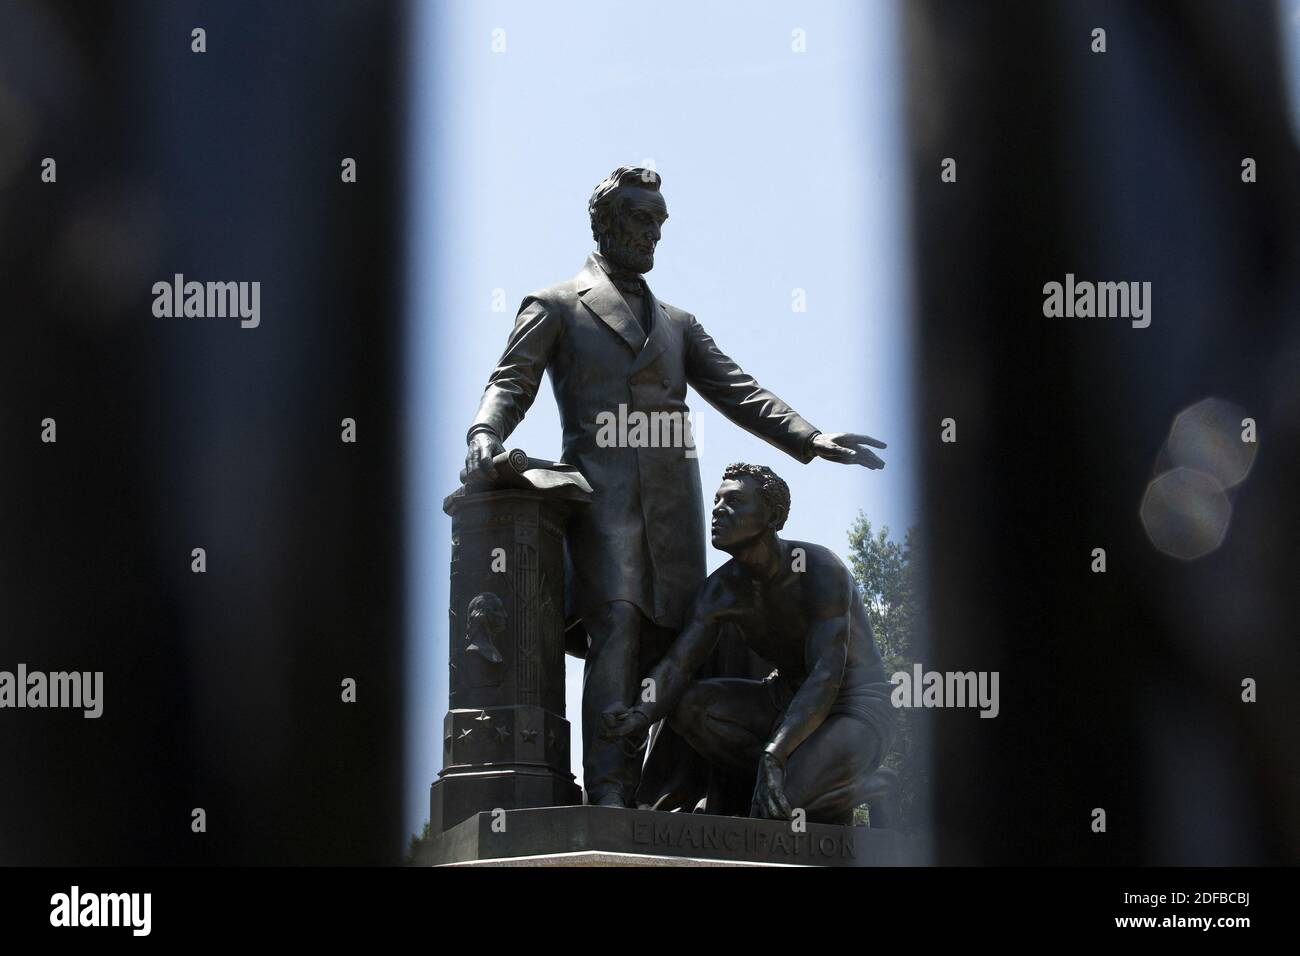 El Monumento a la emancipación se ve a través de cercas adicionales en Lincoln Park en Washington, DC, EE.UU. El lunes, 29 de junio de 2020. Muchos manifestantes han pedido la remoción de la estatua en las últimas semanas. Foto de Stefani Reynolds/CNP/ABACAPRESS.COM Foto de stock